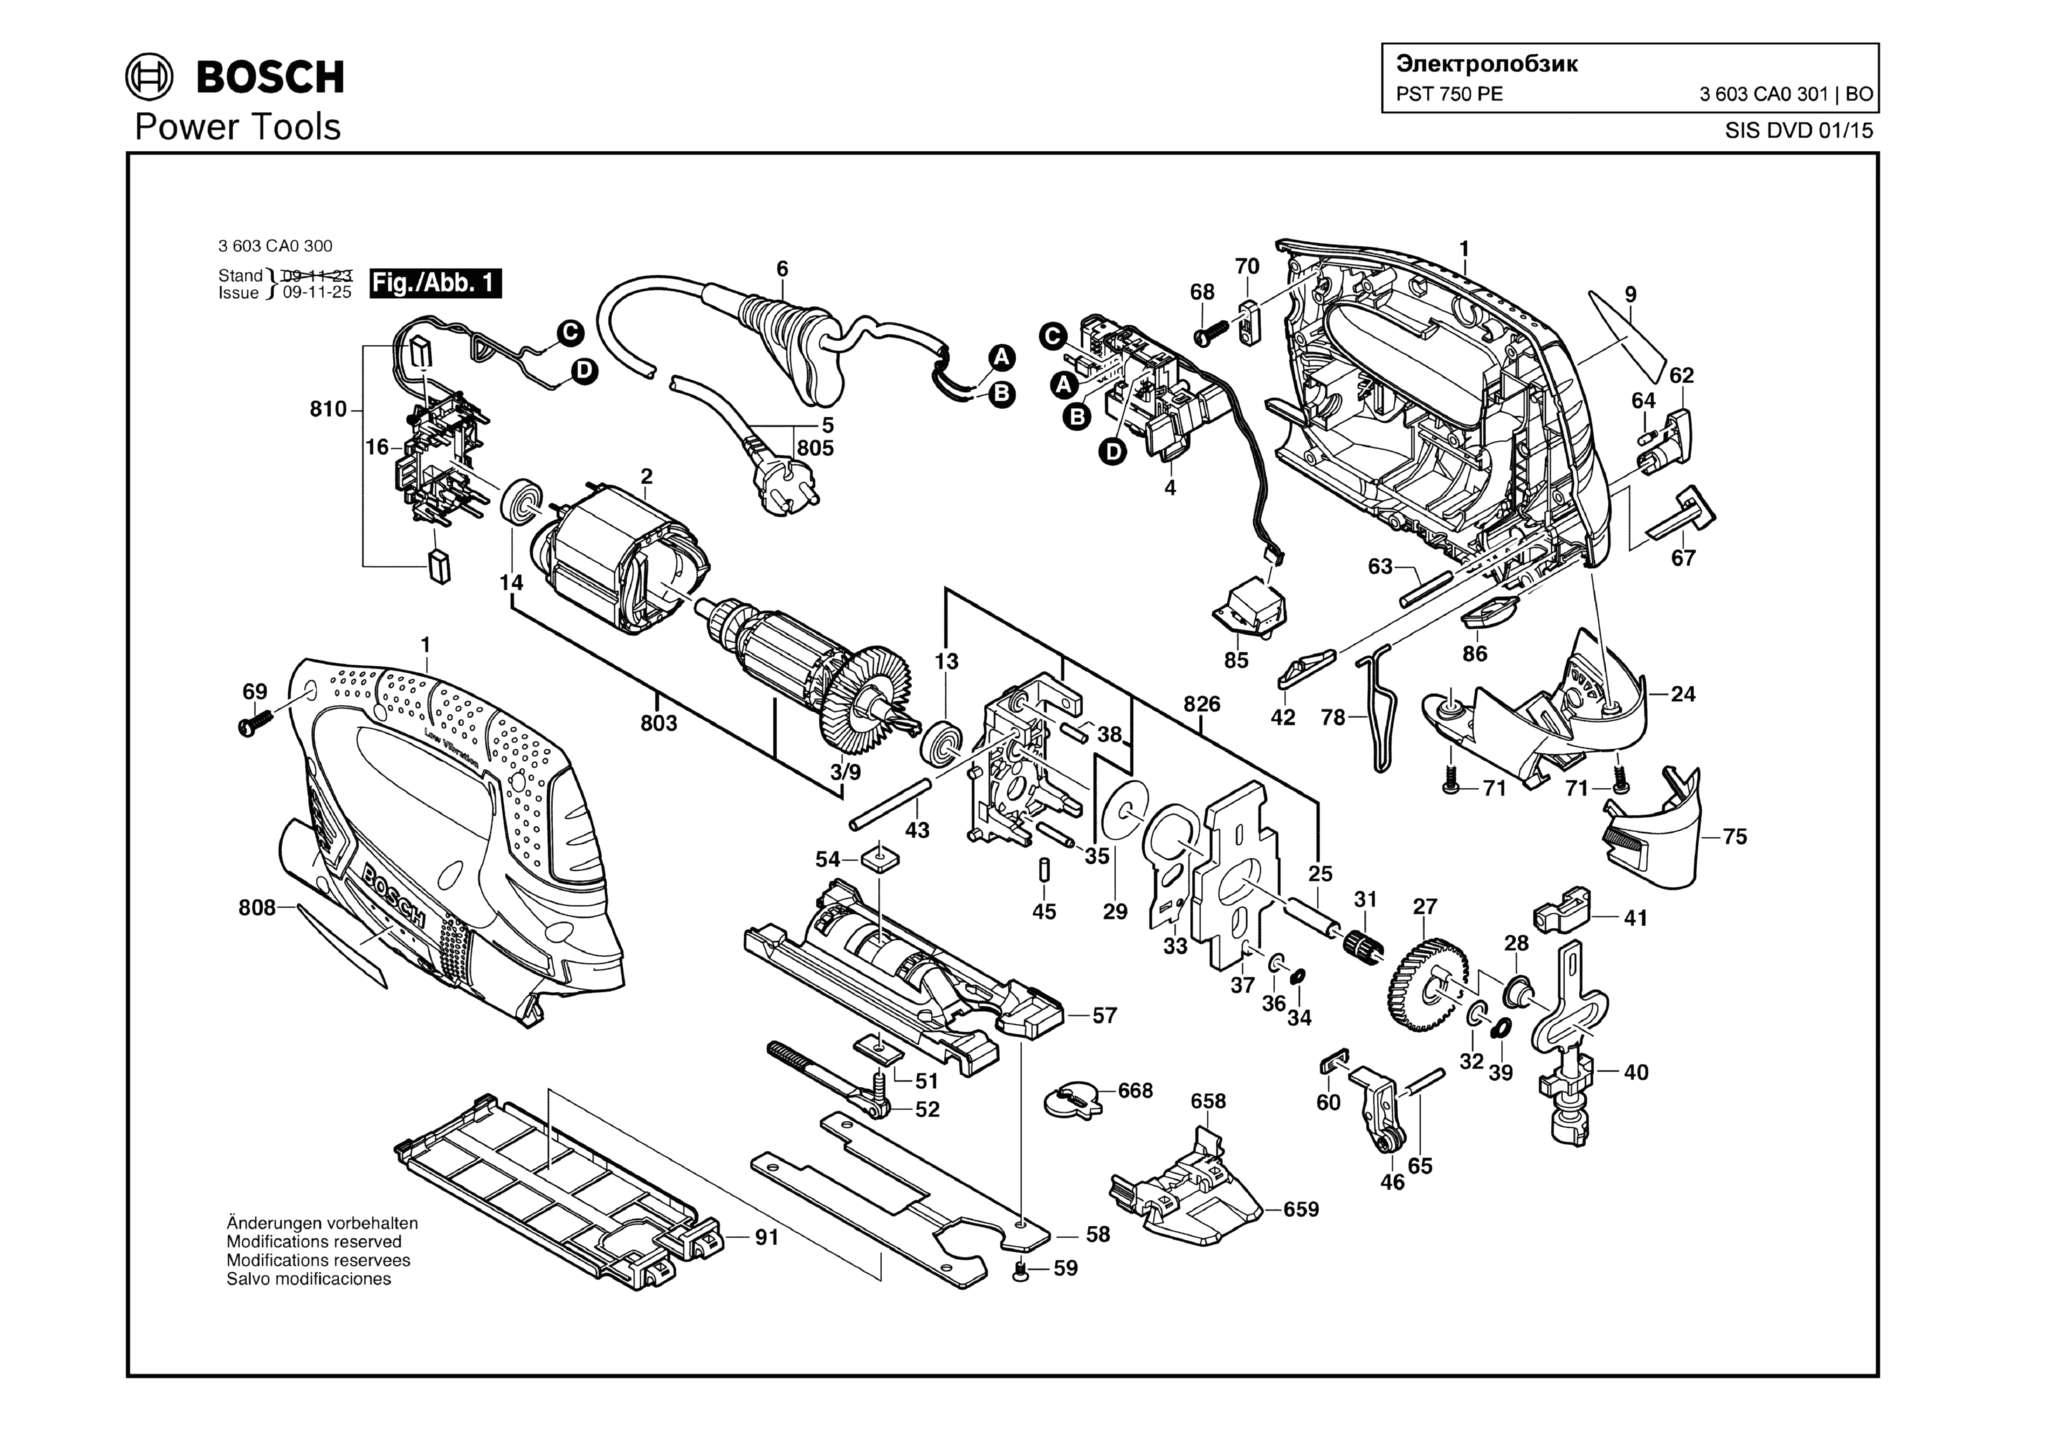 Запчасти, схема и деталировка Bosch PST 750 PE (ТИП 3603CA0301)